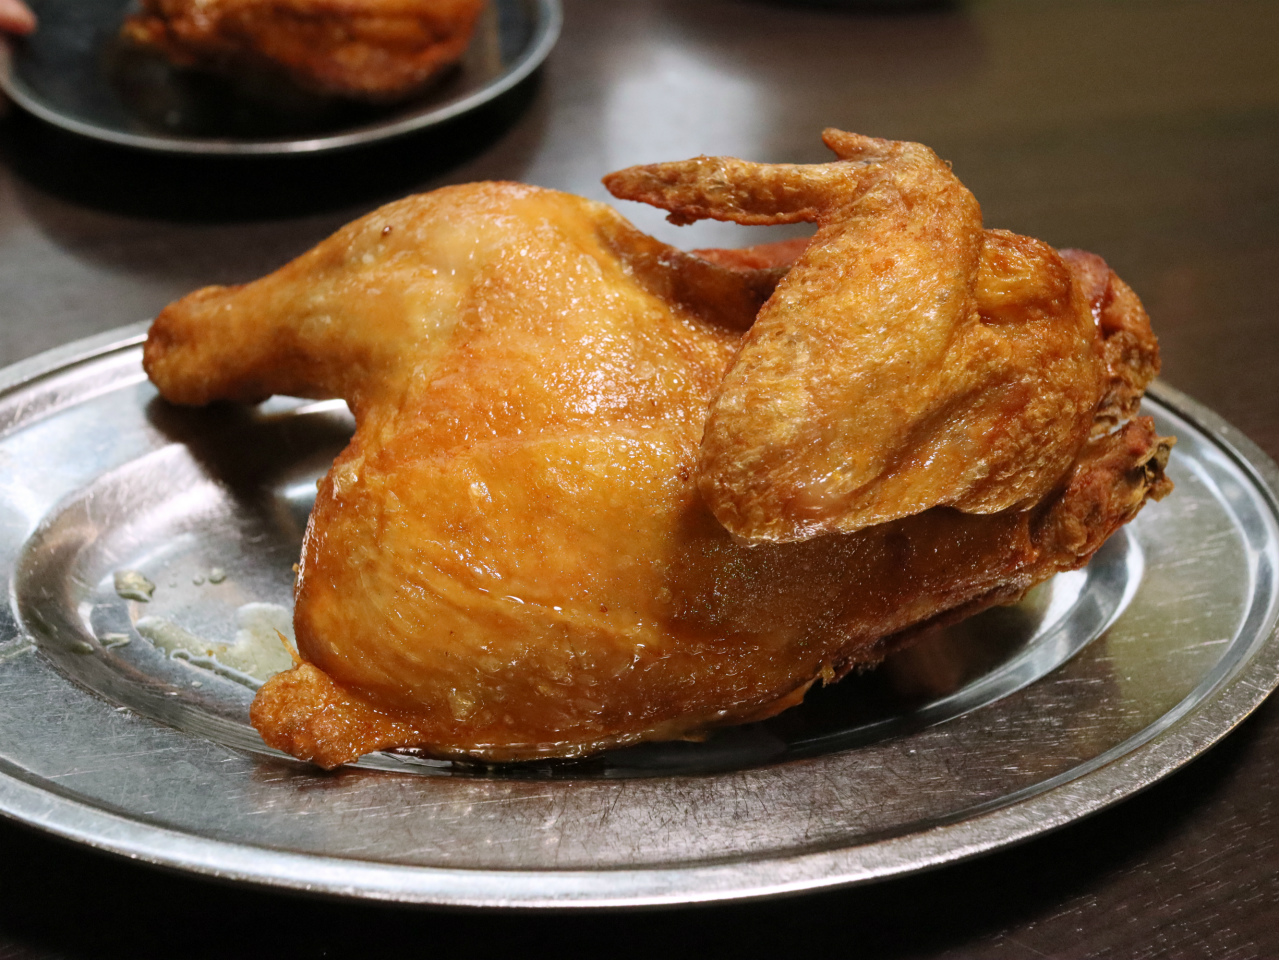 若鶏半身揚げの大きさと美味しさに驚く 小樽 若鶏時代なると本店 美食磁石 Powered By ライブドアブログ